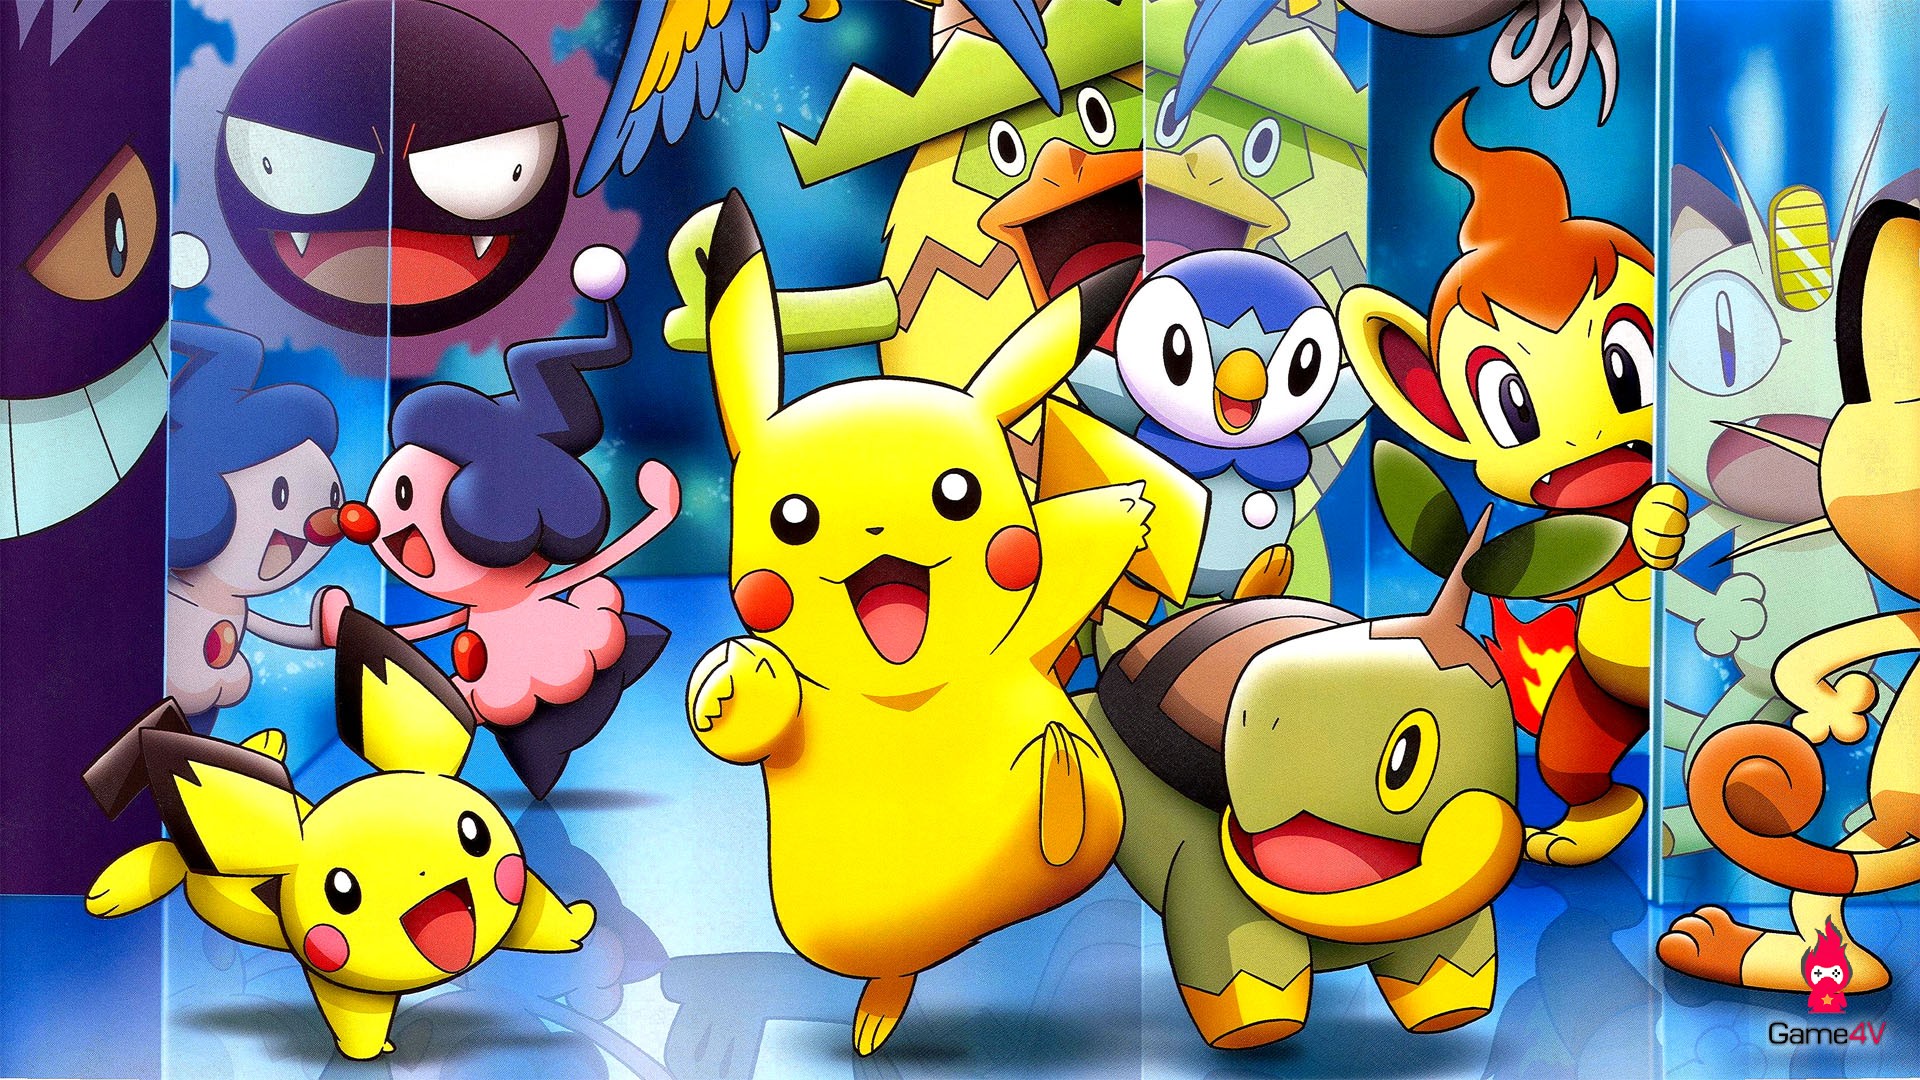 cute-pokemon-wallpaper-full-hd • Game4V - Nói về Game